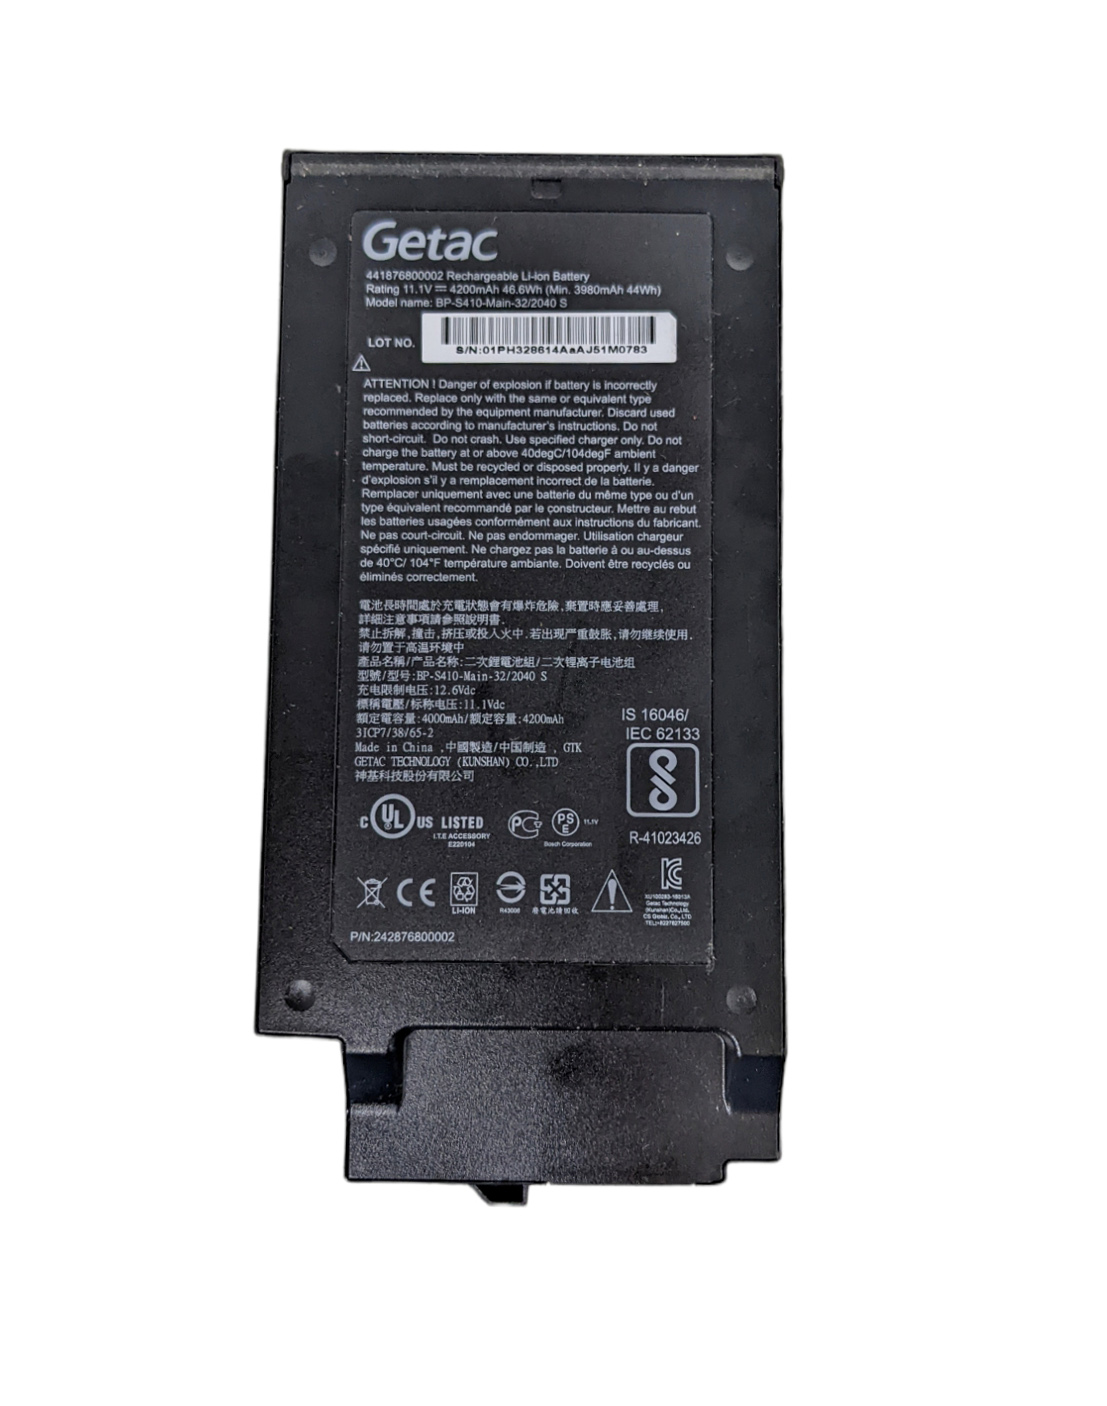 Battery Getac 441876800002 4200mAh 46.6Wh